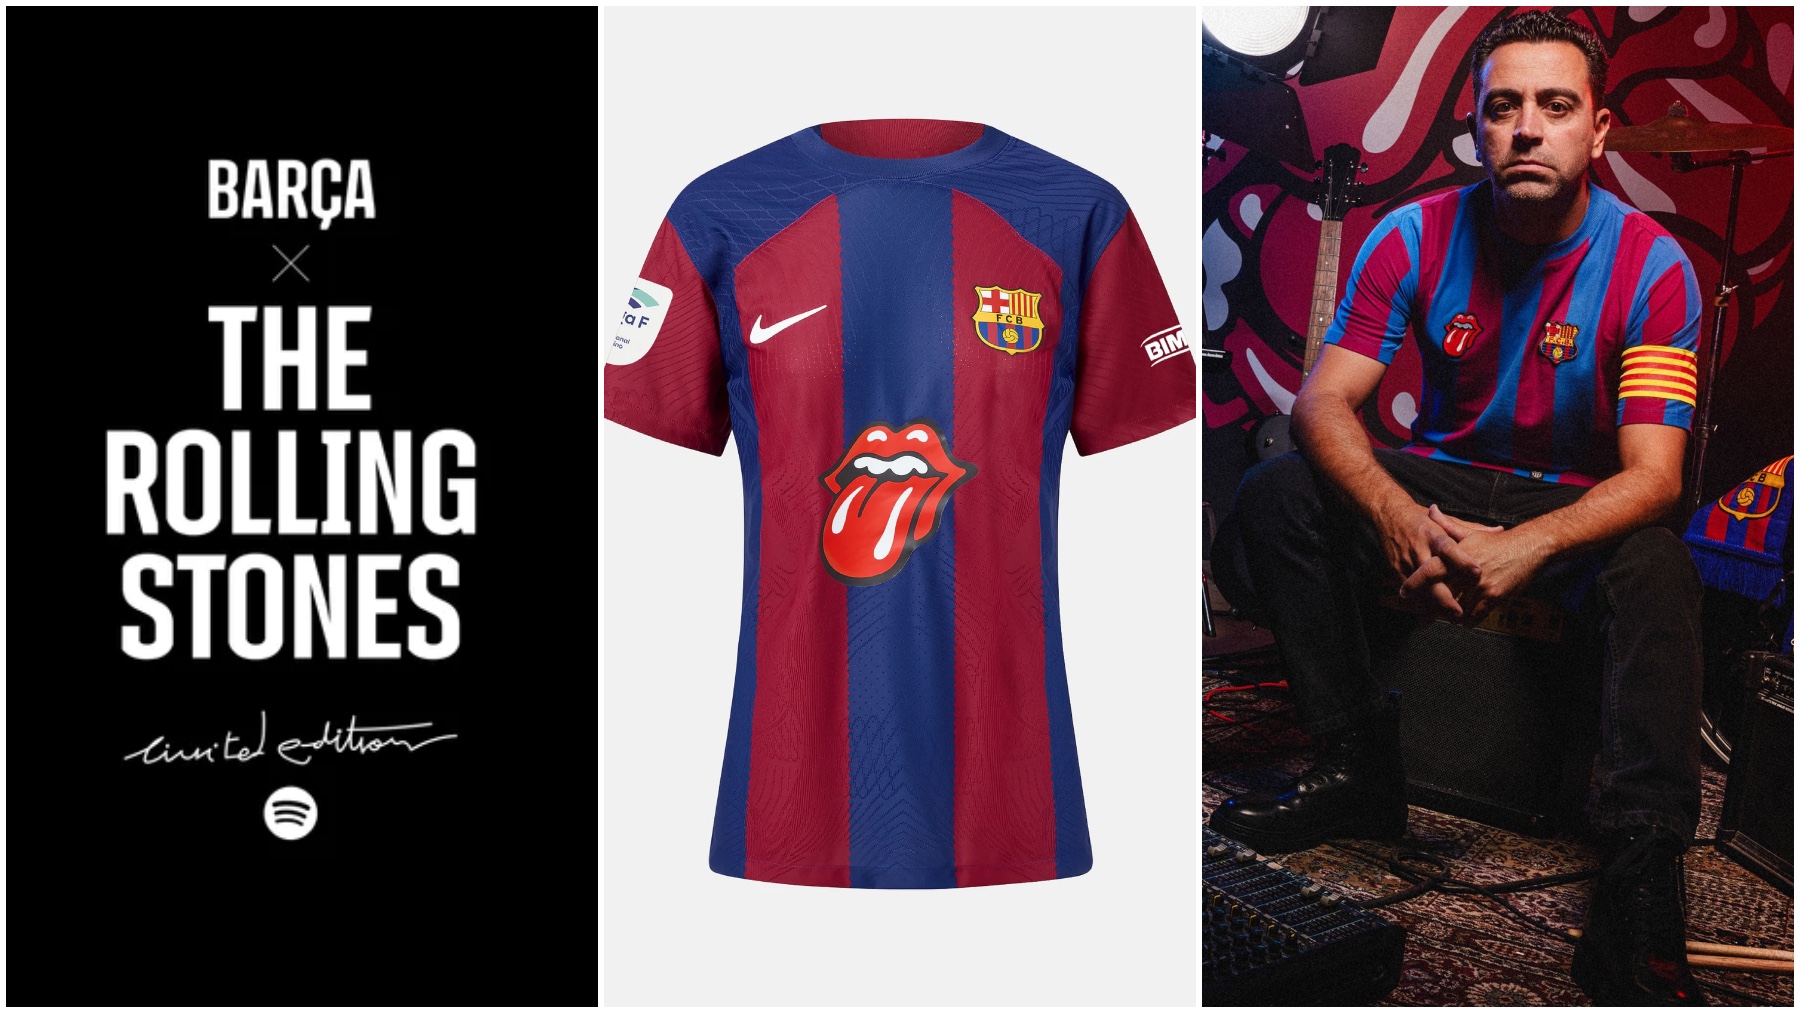 El Barça vuelve a vender camisetas a 3.000 euros aprovechando el Clásico y  los Rolling Stones